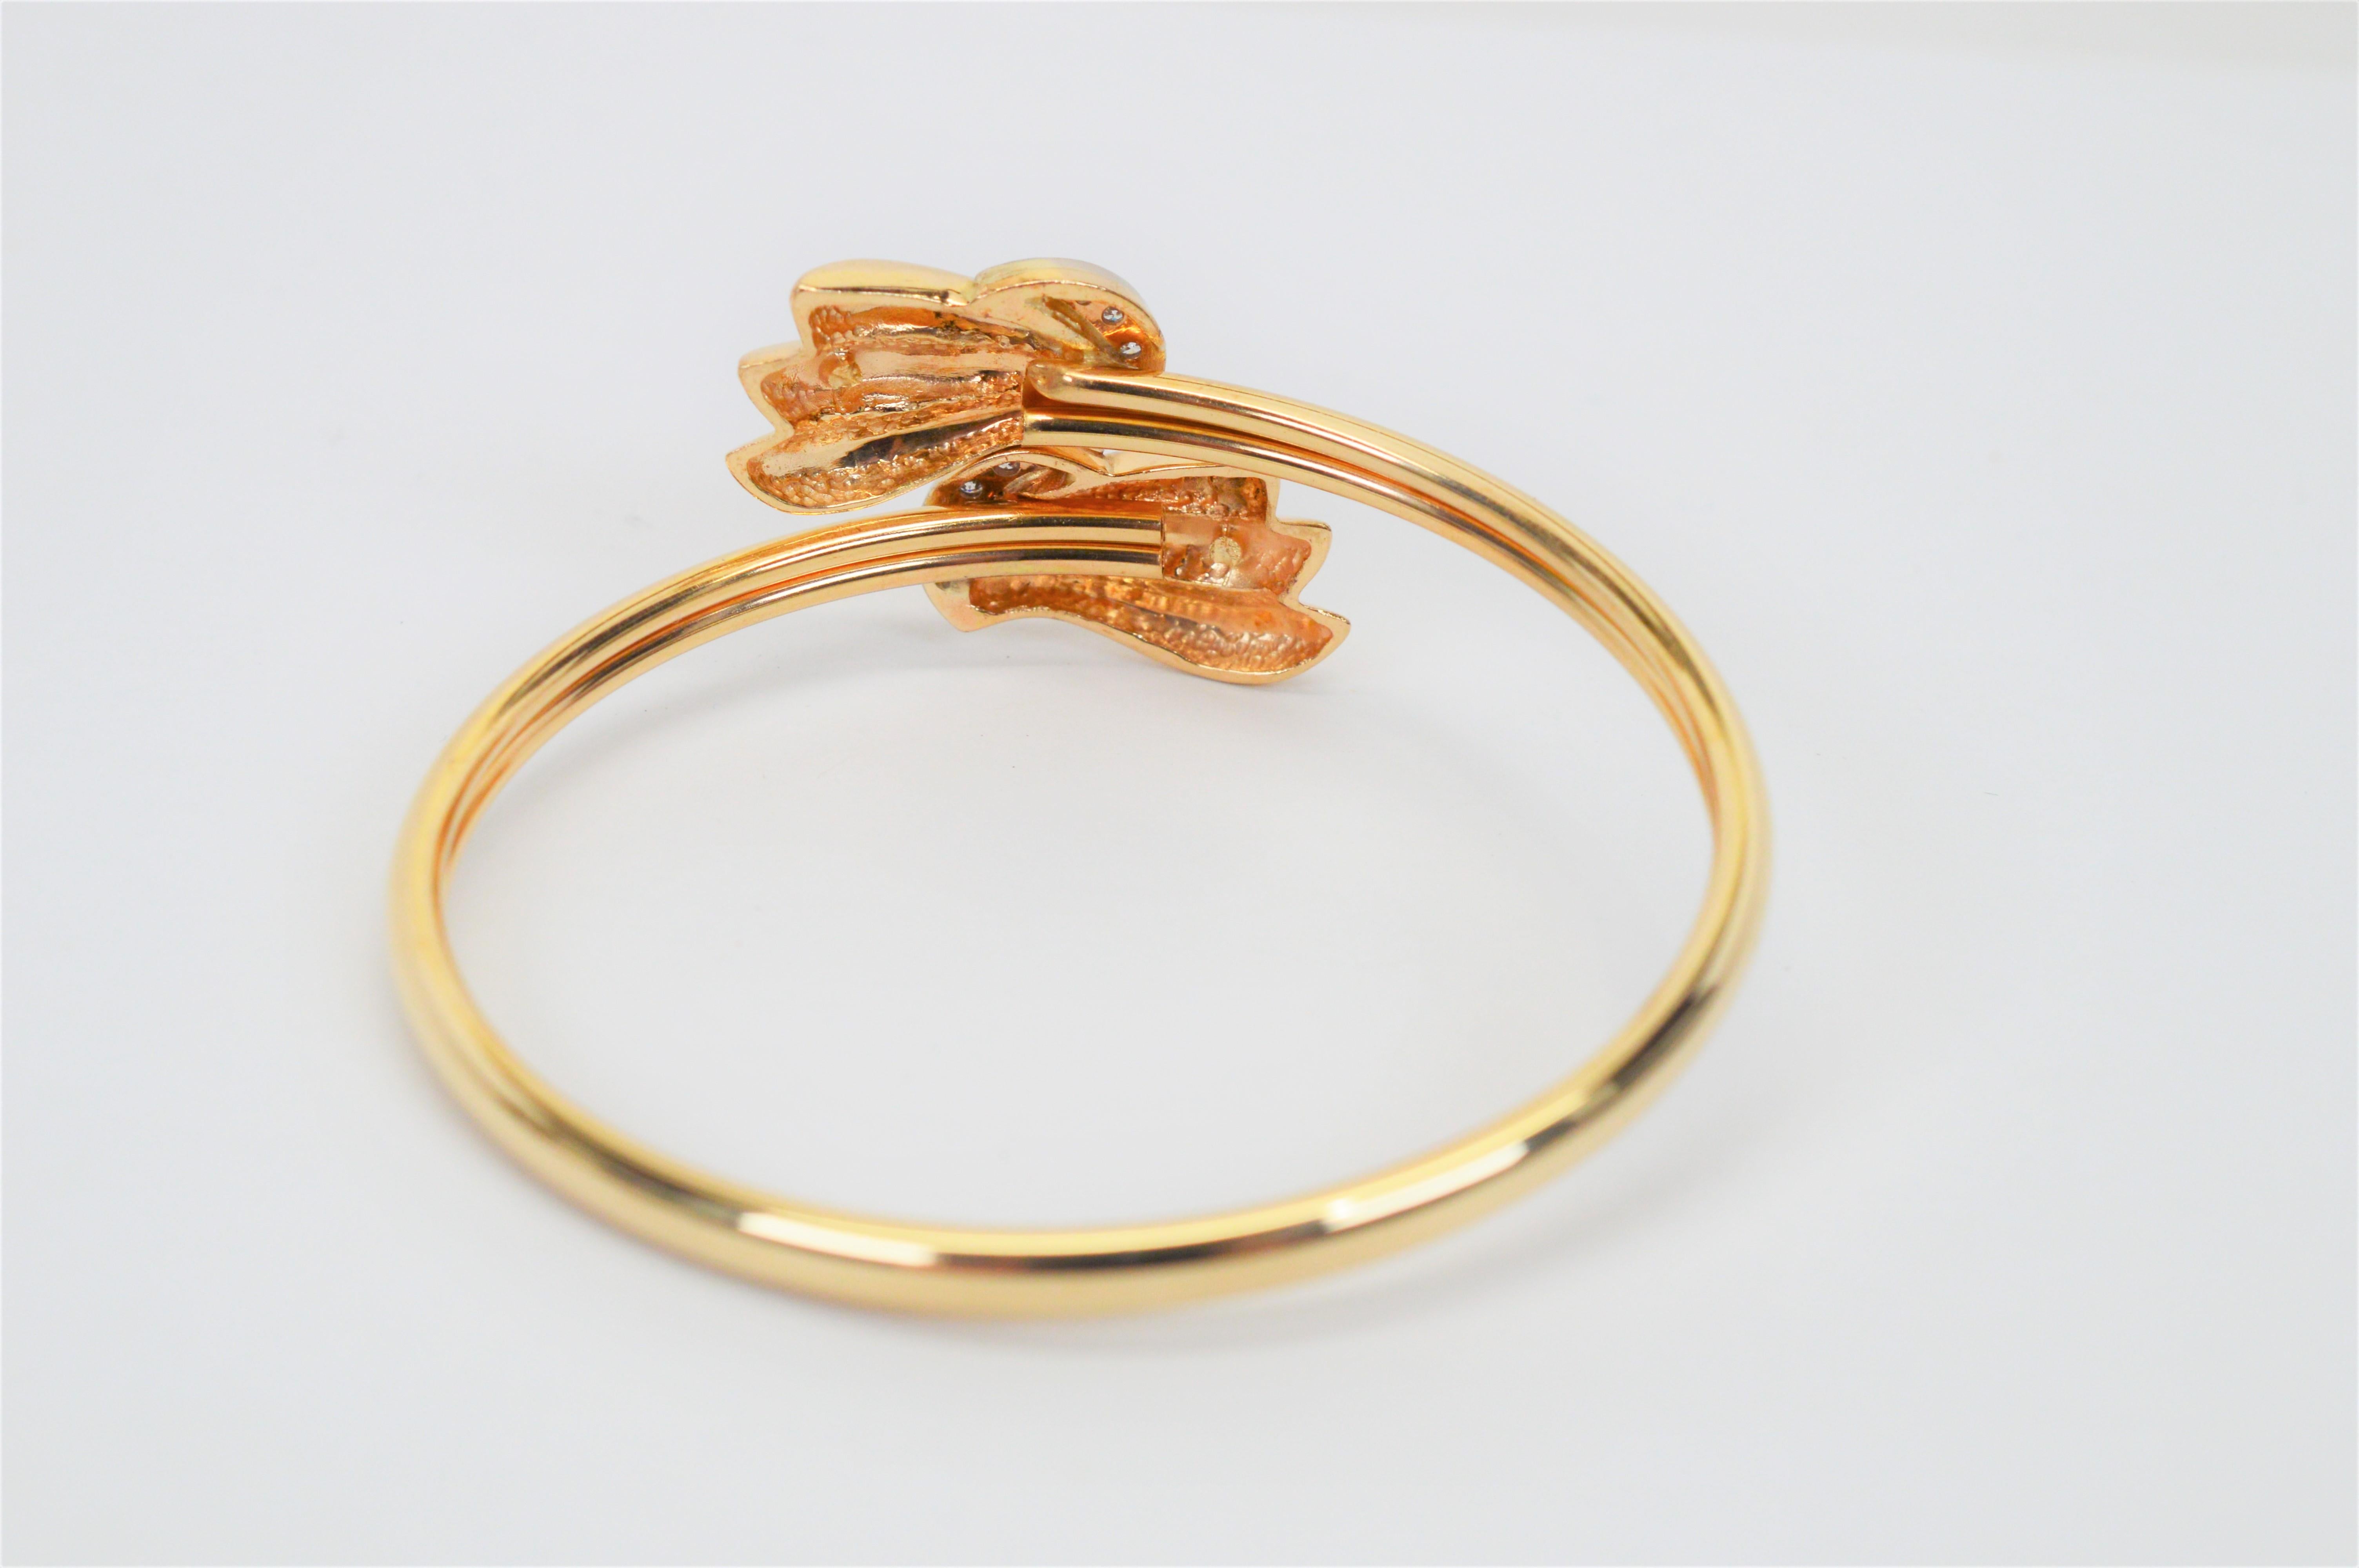 modern finger ring bracelet designs in gold